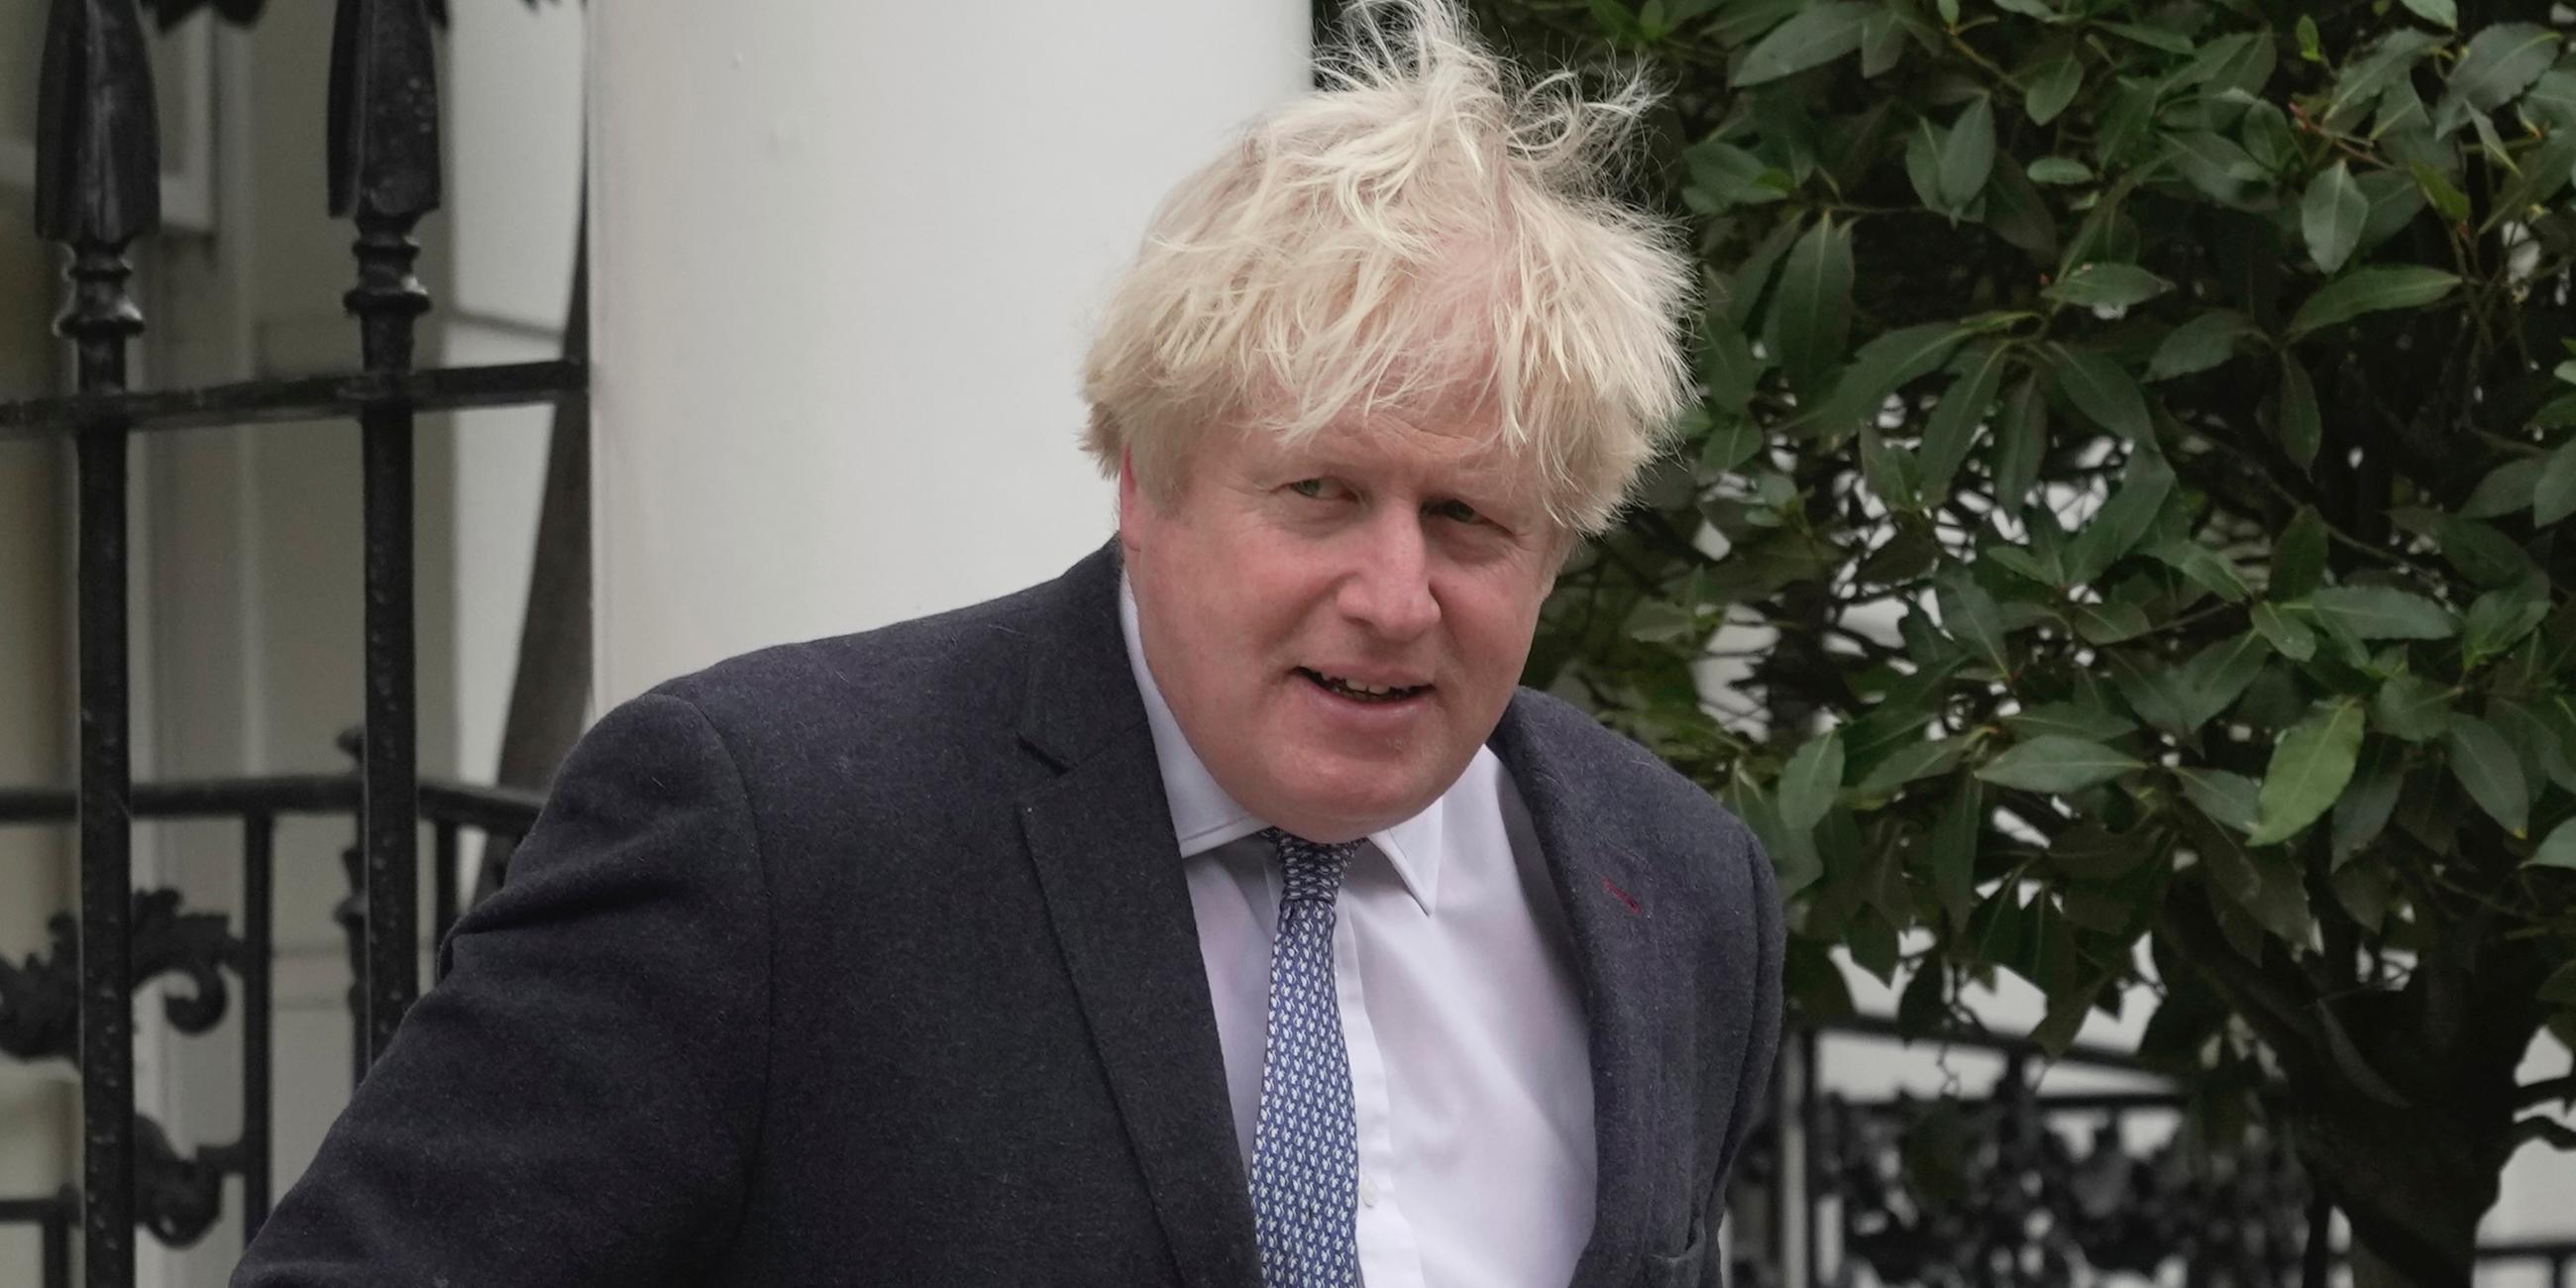 Großbritannien, London: Boris Johnson, ehemaliger Premierminister von Großbritannien